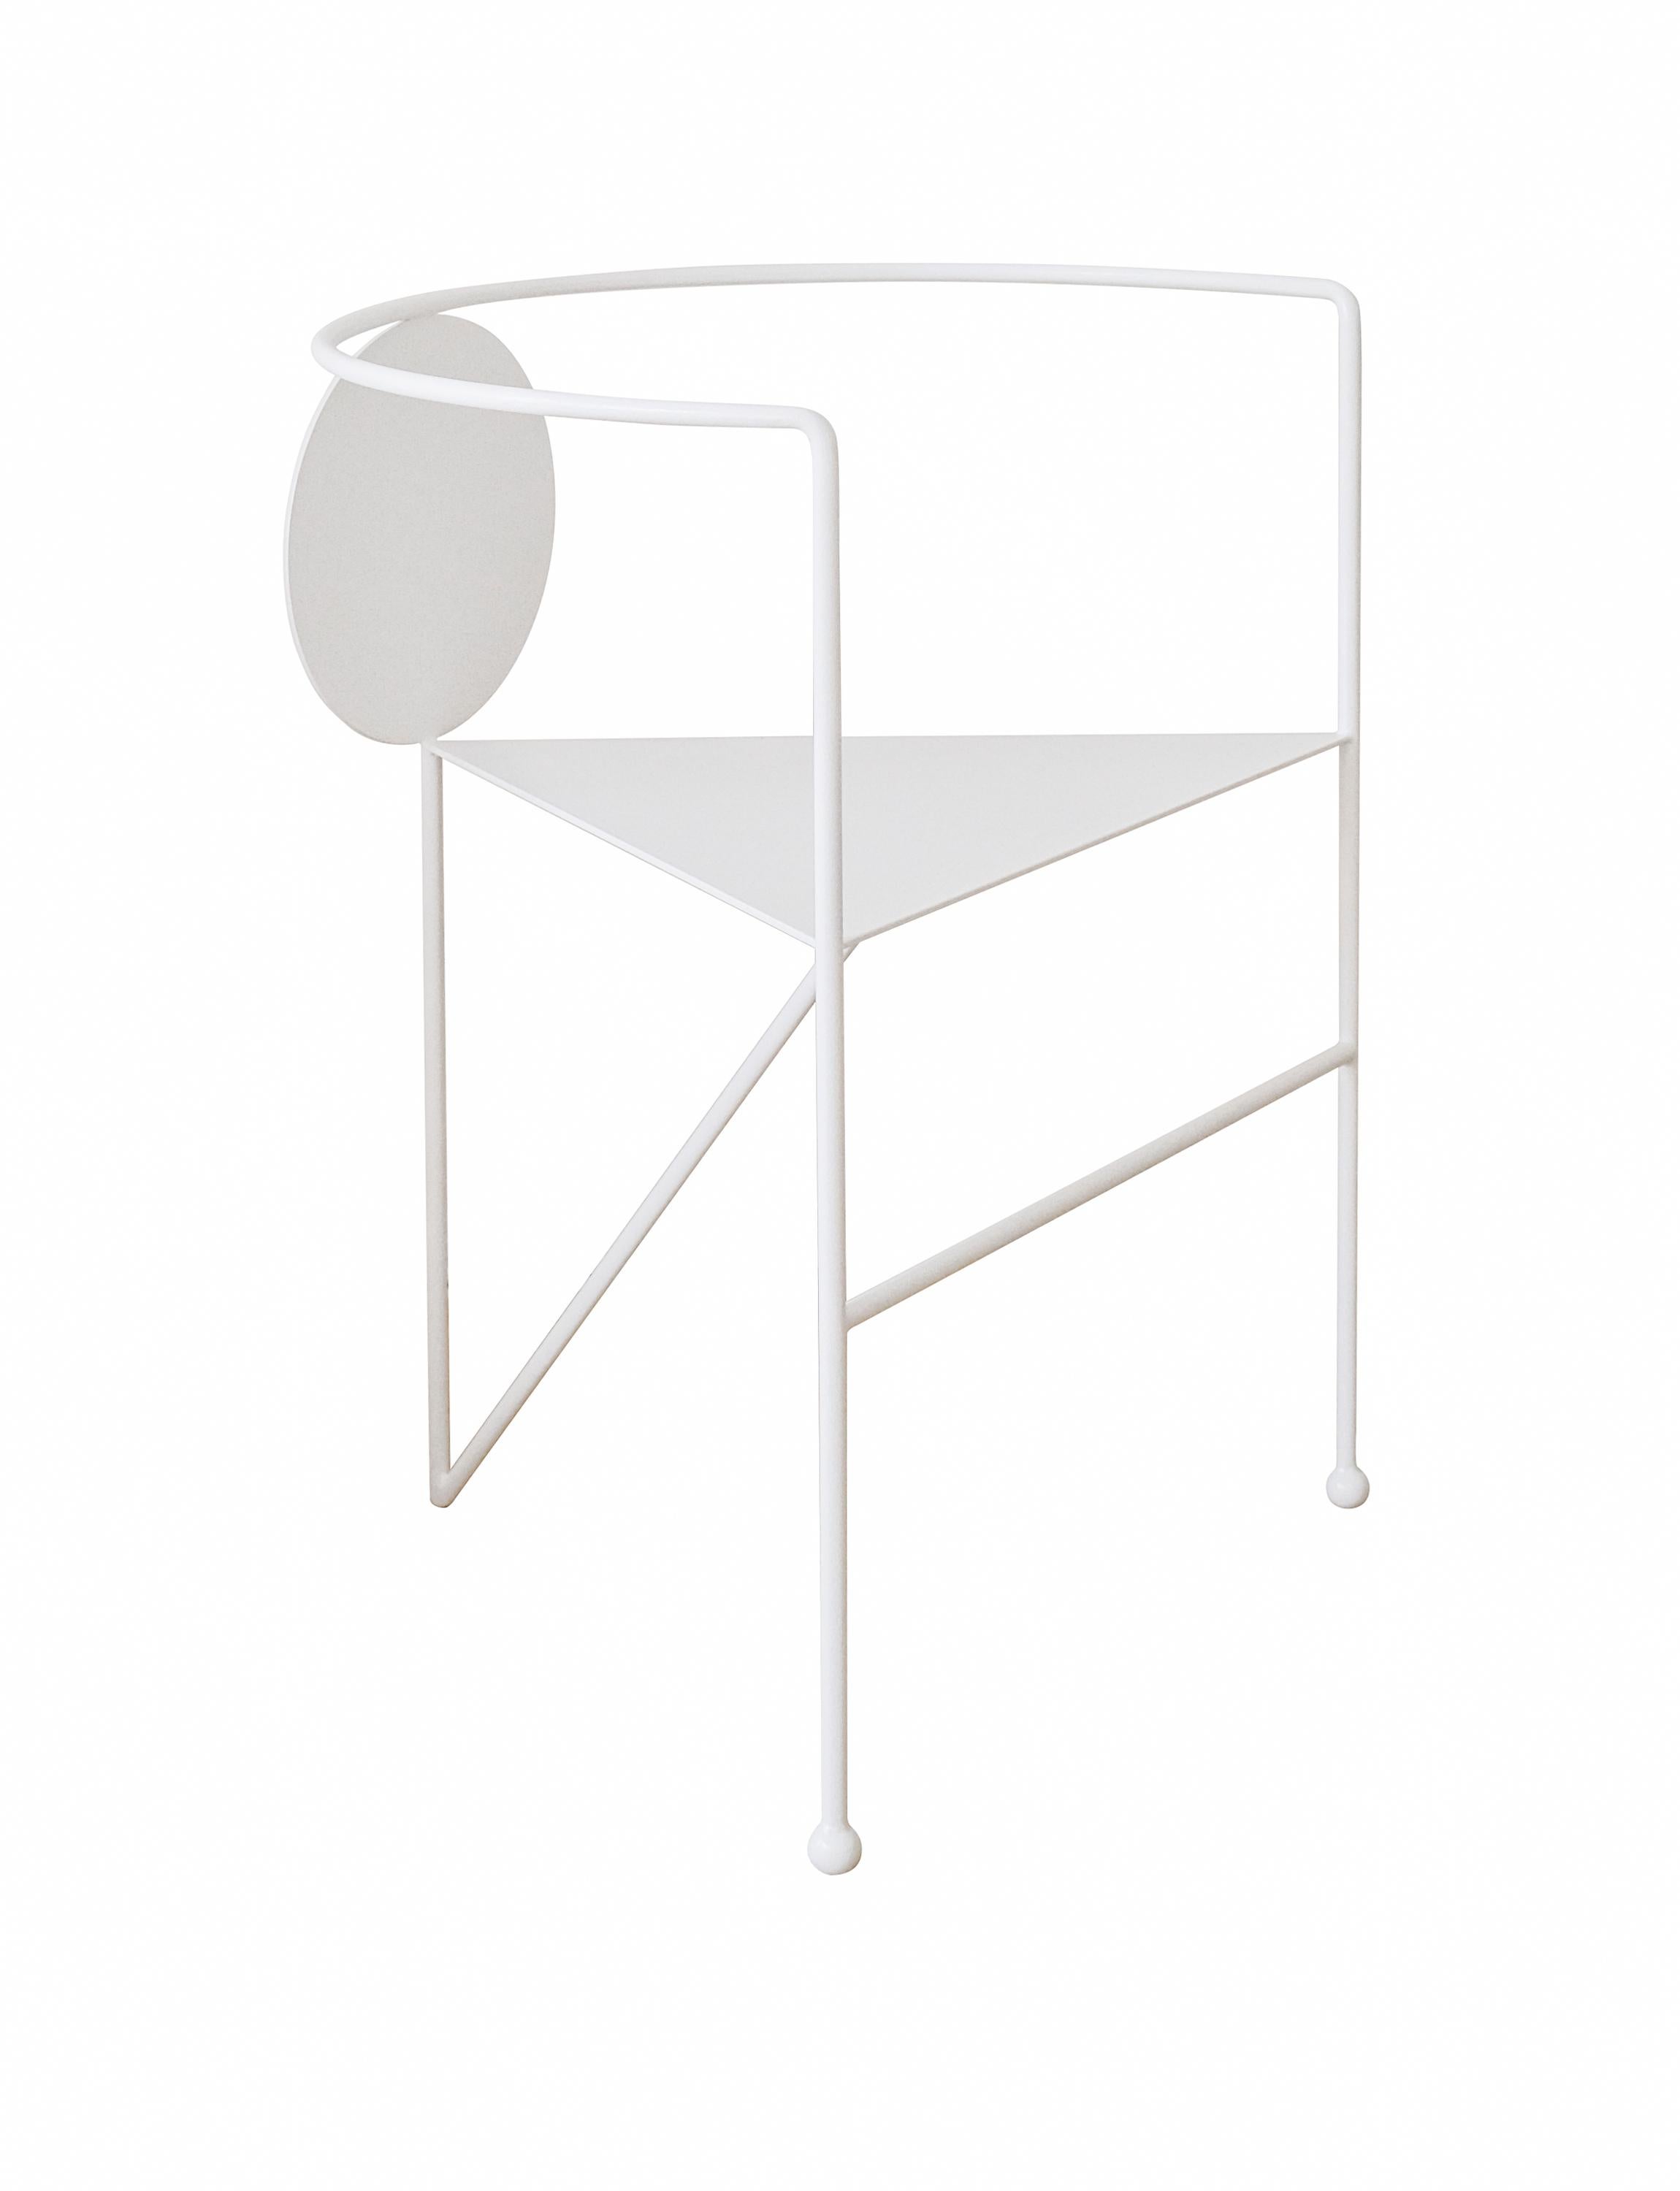 Dreieckiger Stuhl von Nazara Lazaro
Abmessungen: T 43 x B 60 x H 70 cm 
MATERIALIEN: Stahl
Technik: Pulverbeschichtet. 
Er kann individuell angepasst und in Edelstahl, Rost oder pulverbeschichtet in jeder RAL-Farbe bestellt werden. 


Der